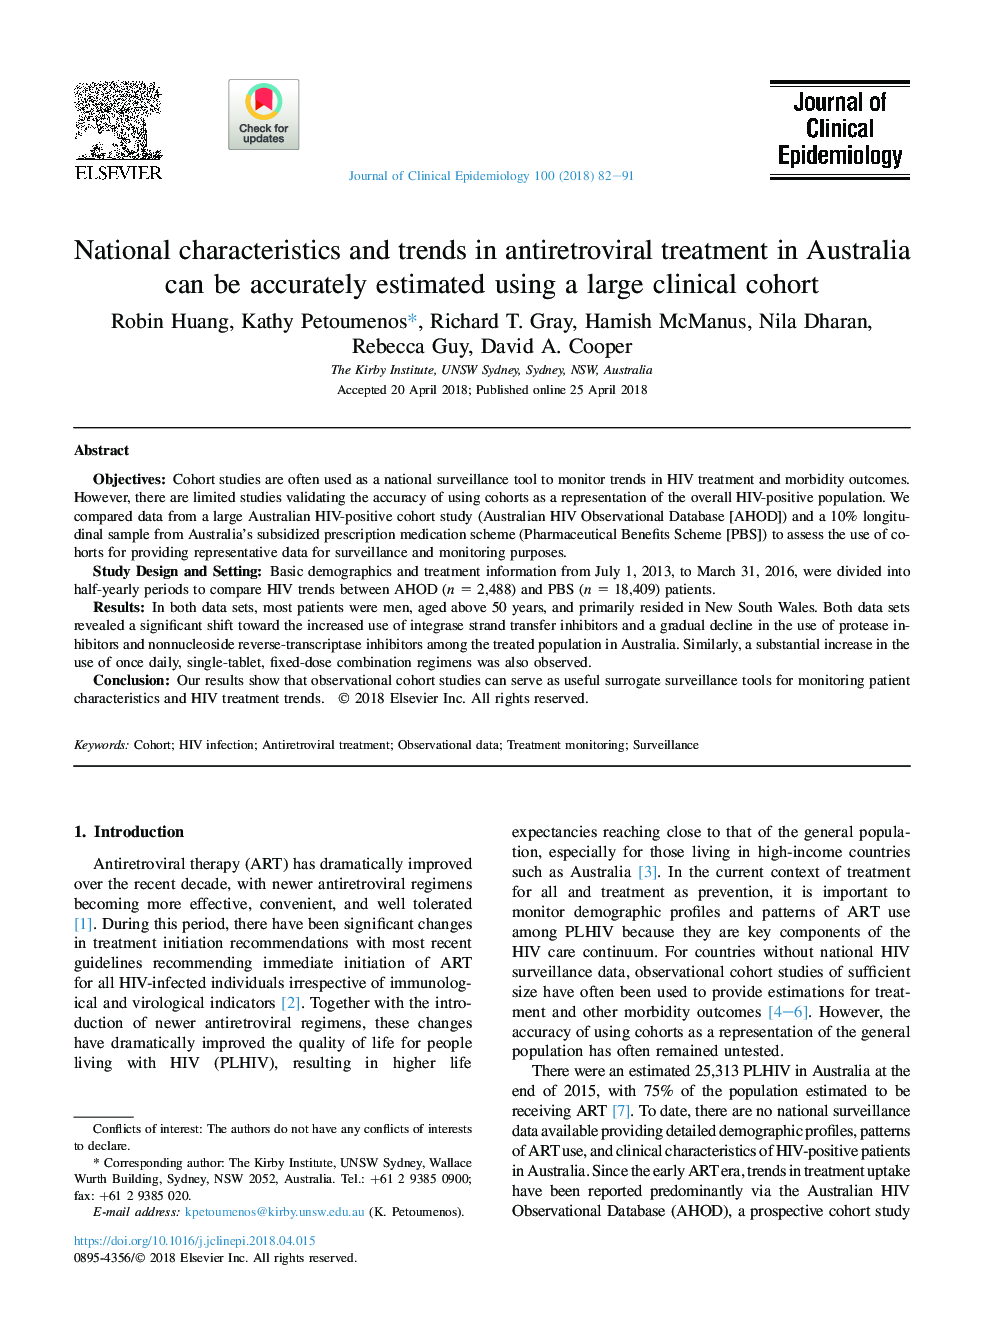 ویژگی های ملی و روند درمان ضد رتروویروسی در استرالیا را می توان با استفاده از یک گروه بالینی بالقوه محاسبه کرد 